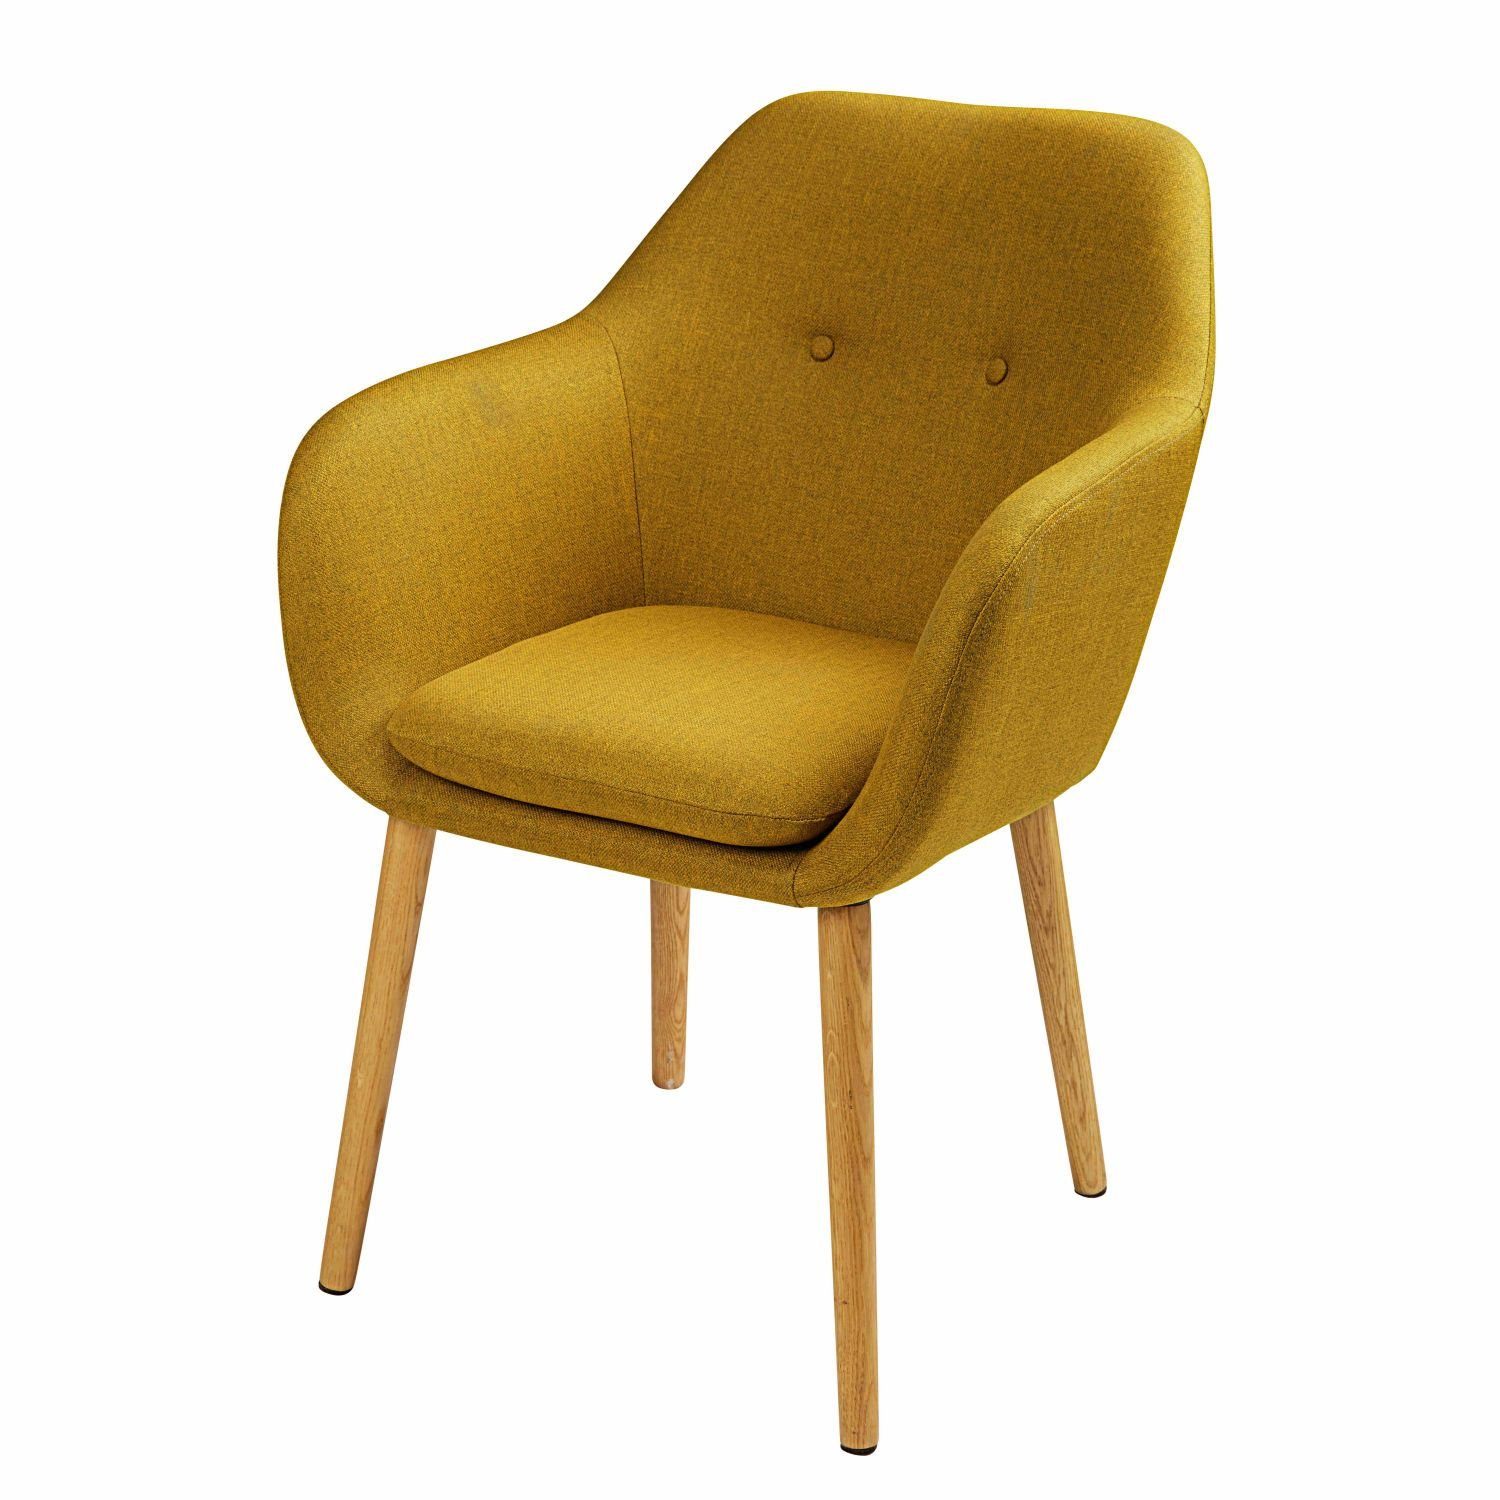 Горчичное кресло. Стул мягкий горчичный. Стул кресло. Стул желтый. Горчичное кресло стул.